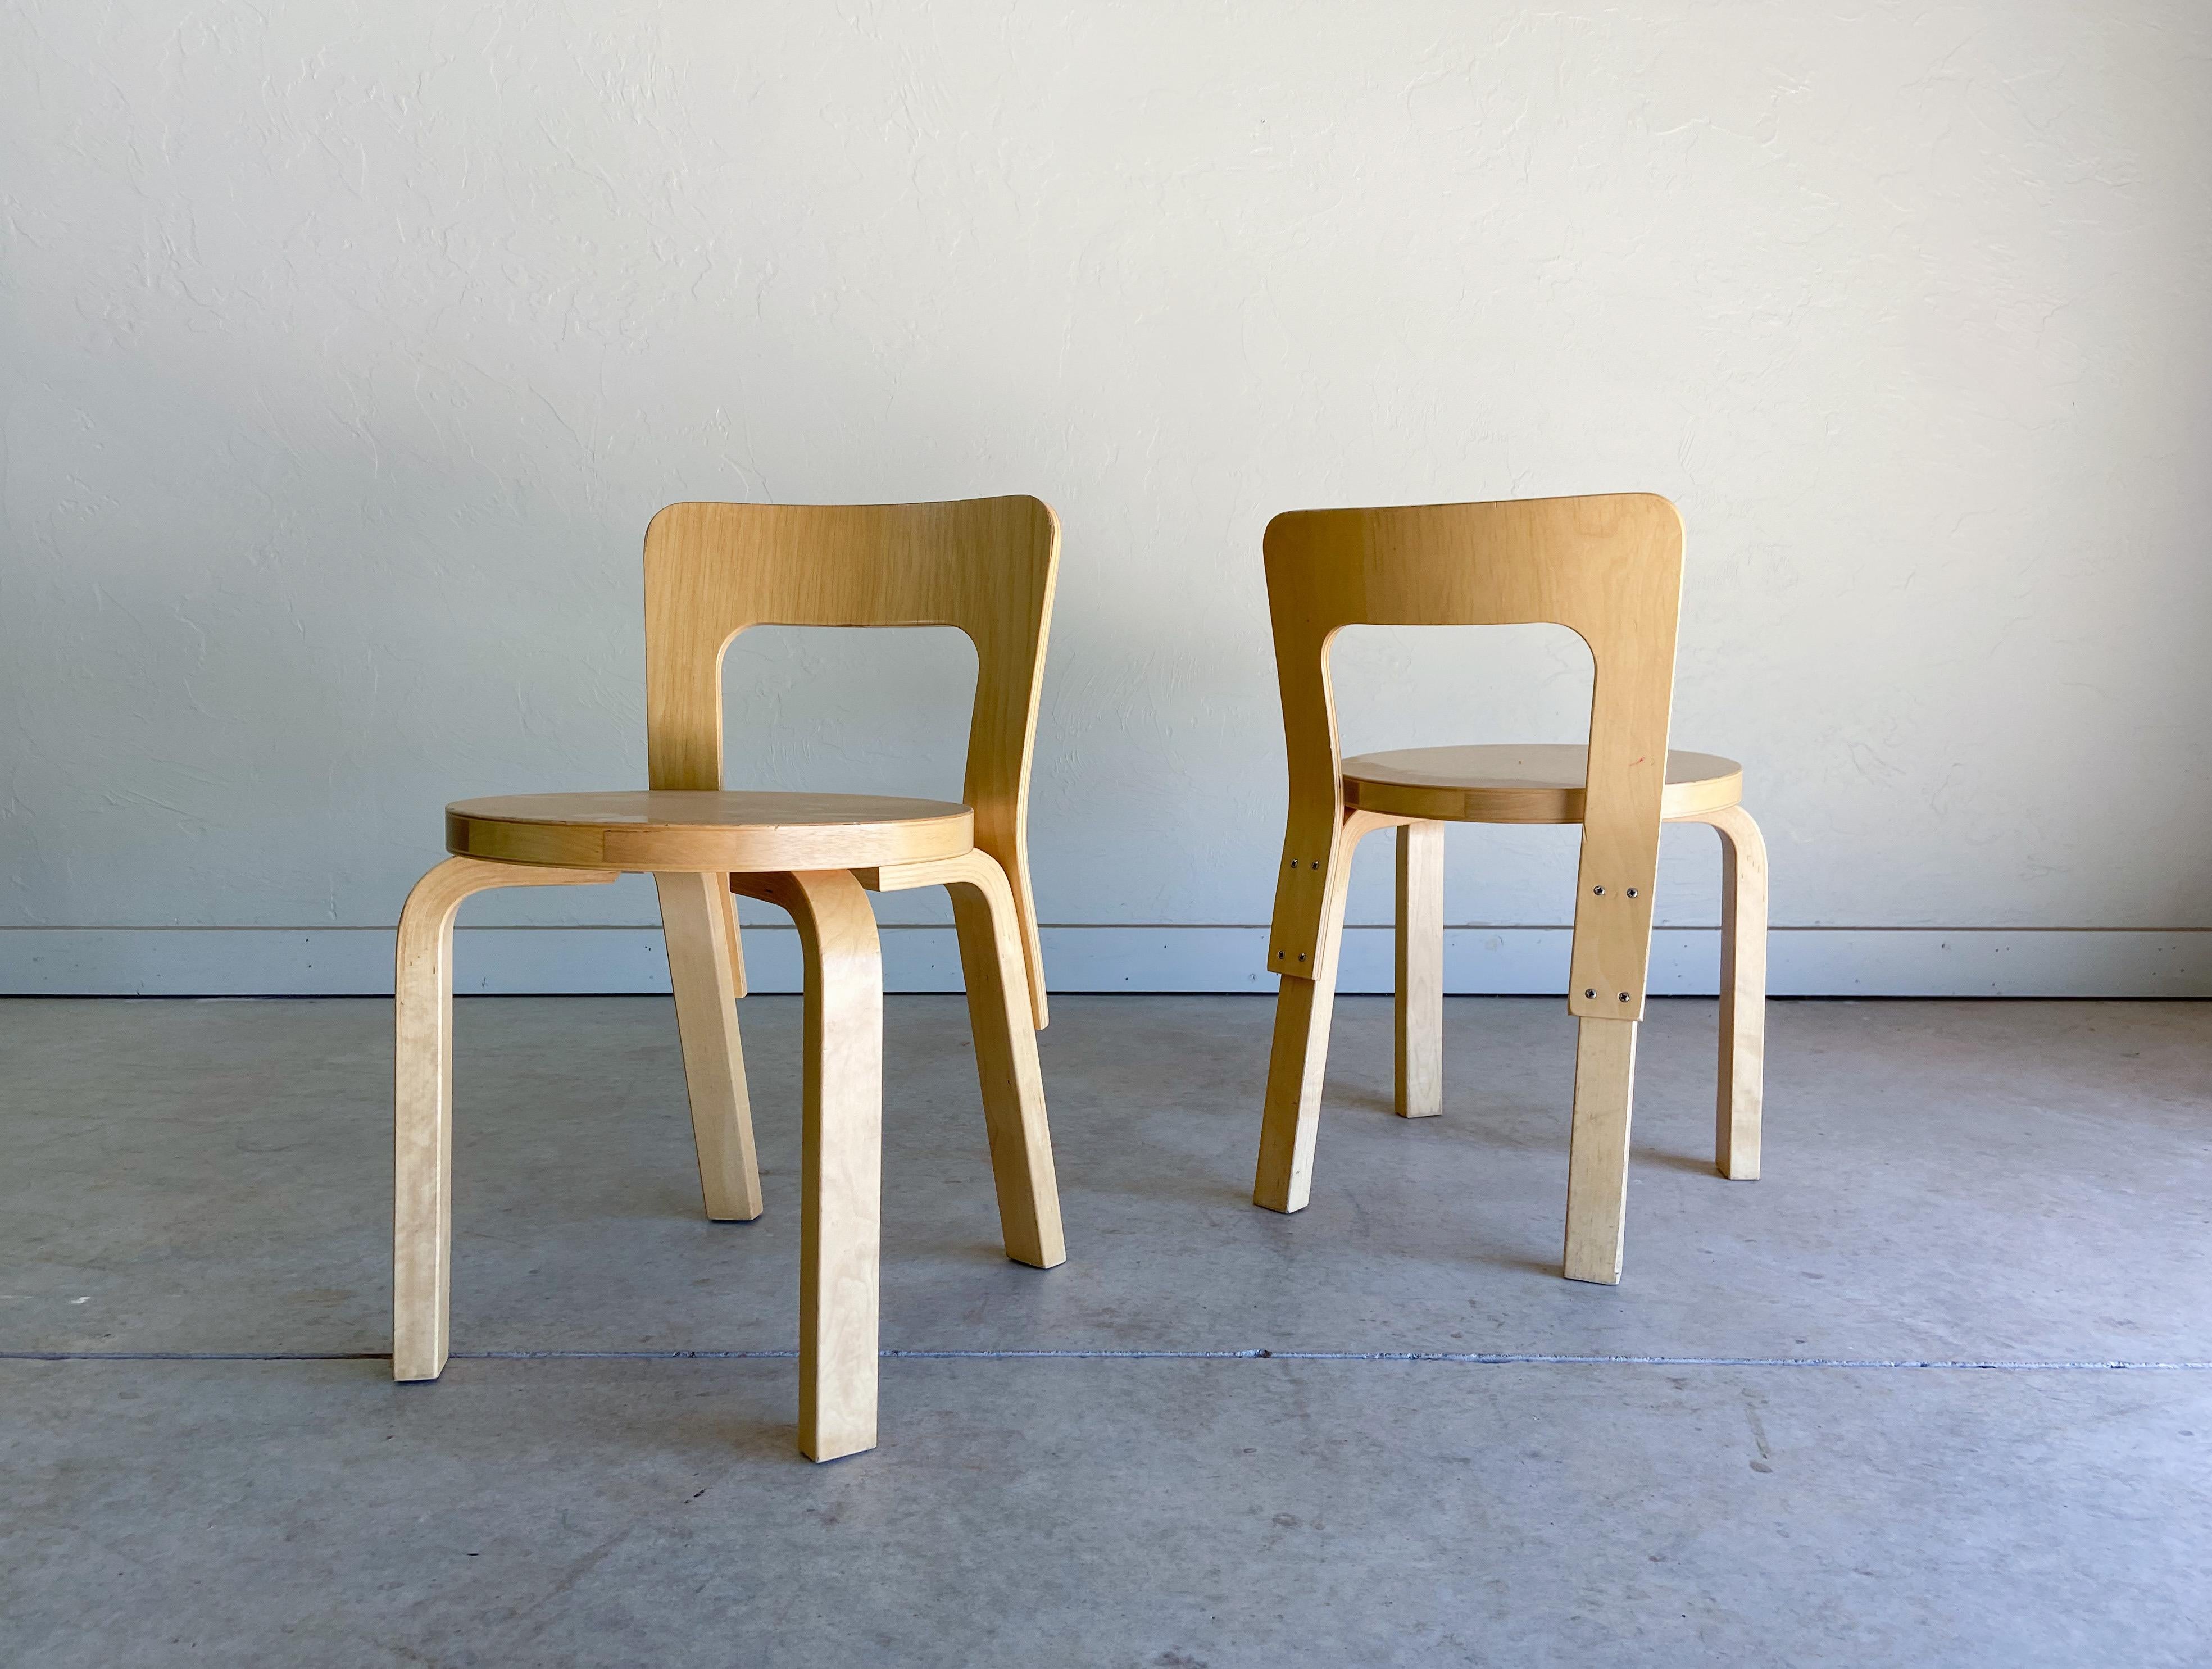 Nous vous proposons un ensemble de chaises pour enfants N65 de production récente, conçues par le célèbre architecte et designer Alvar Aalto et produites par Artek. 

Il s'agit sans aucun doute de l'une des créations les plus reconnues et les plus